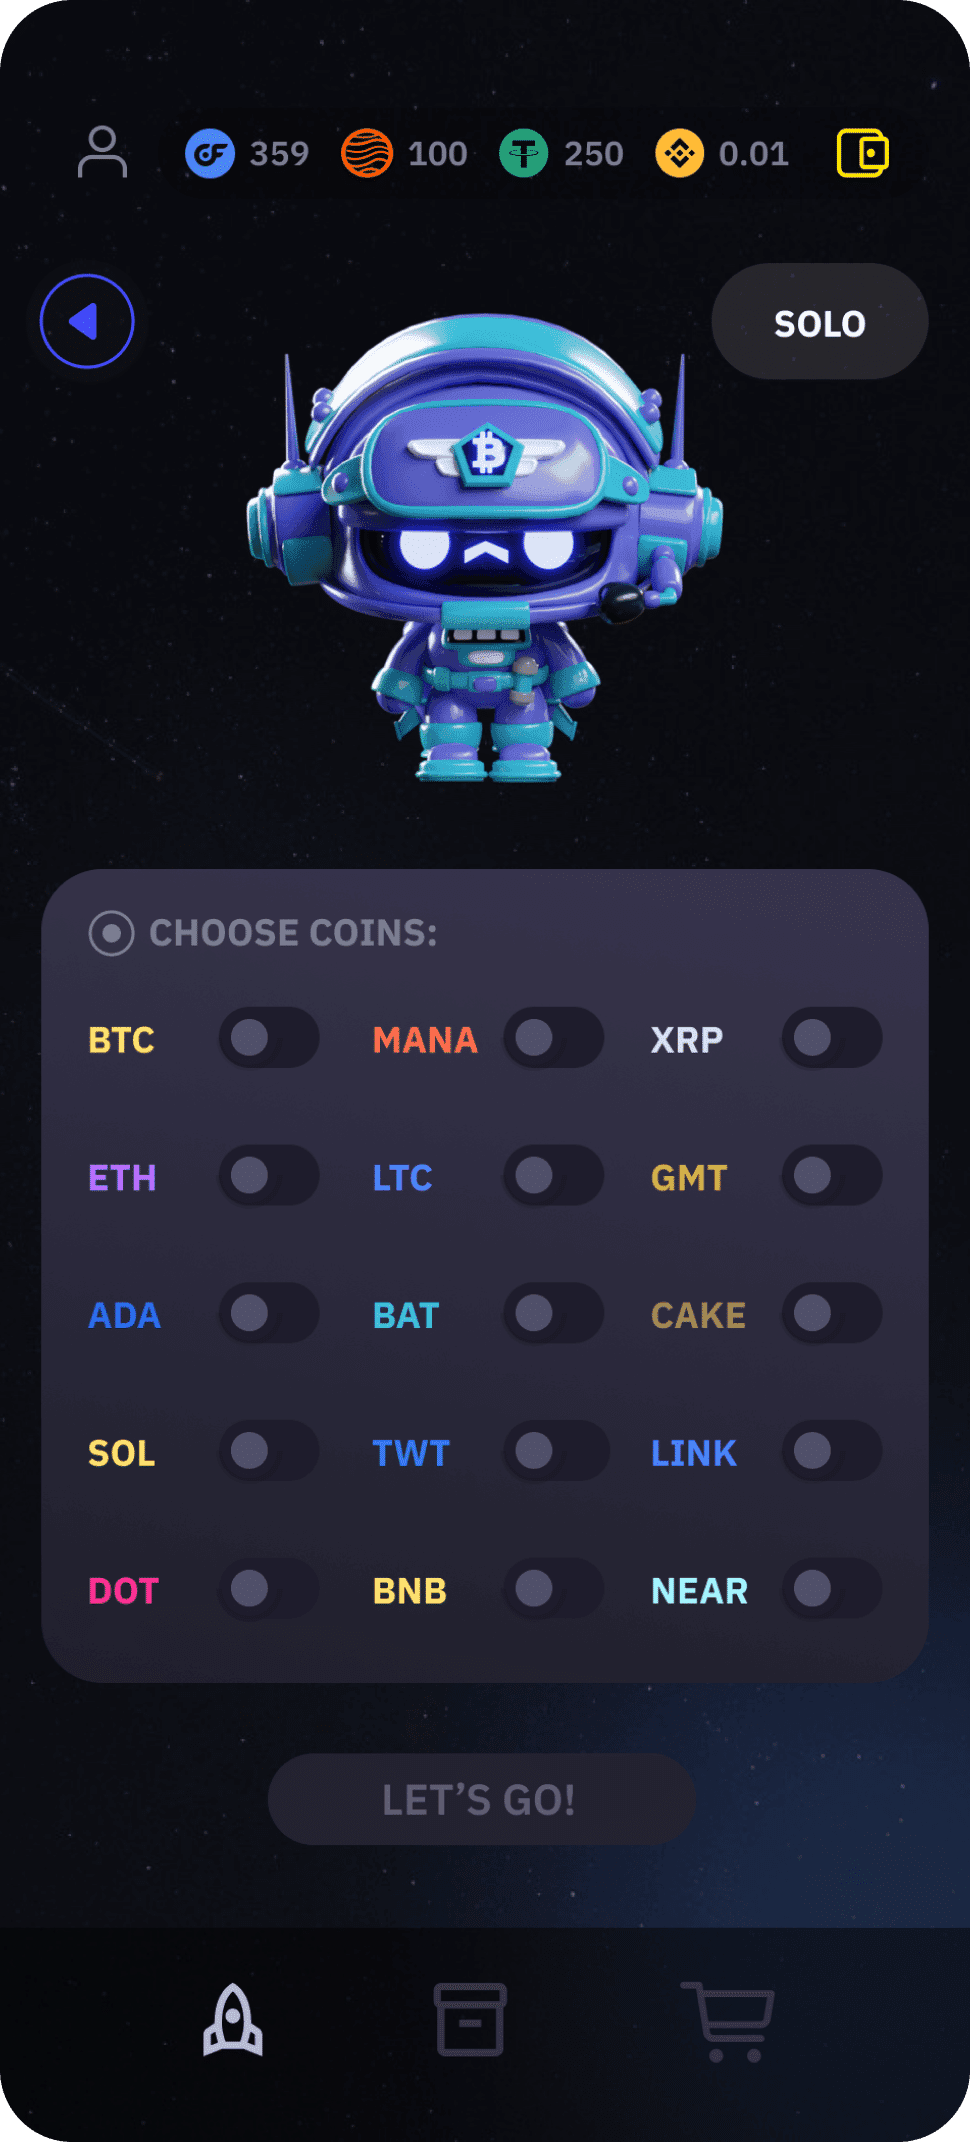 Cosmic FOMO ist eine App, mit der Sie den Krypto-Handel spielerisch erlernen und Geld verdienen können, ohne Ihr tatsächliches Vermögen zu riskieren.